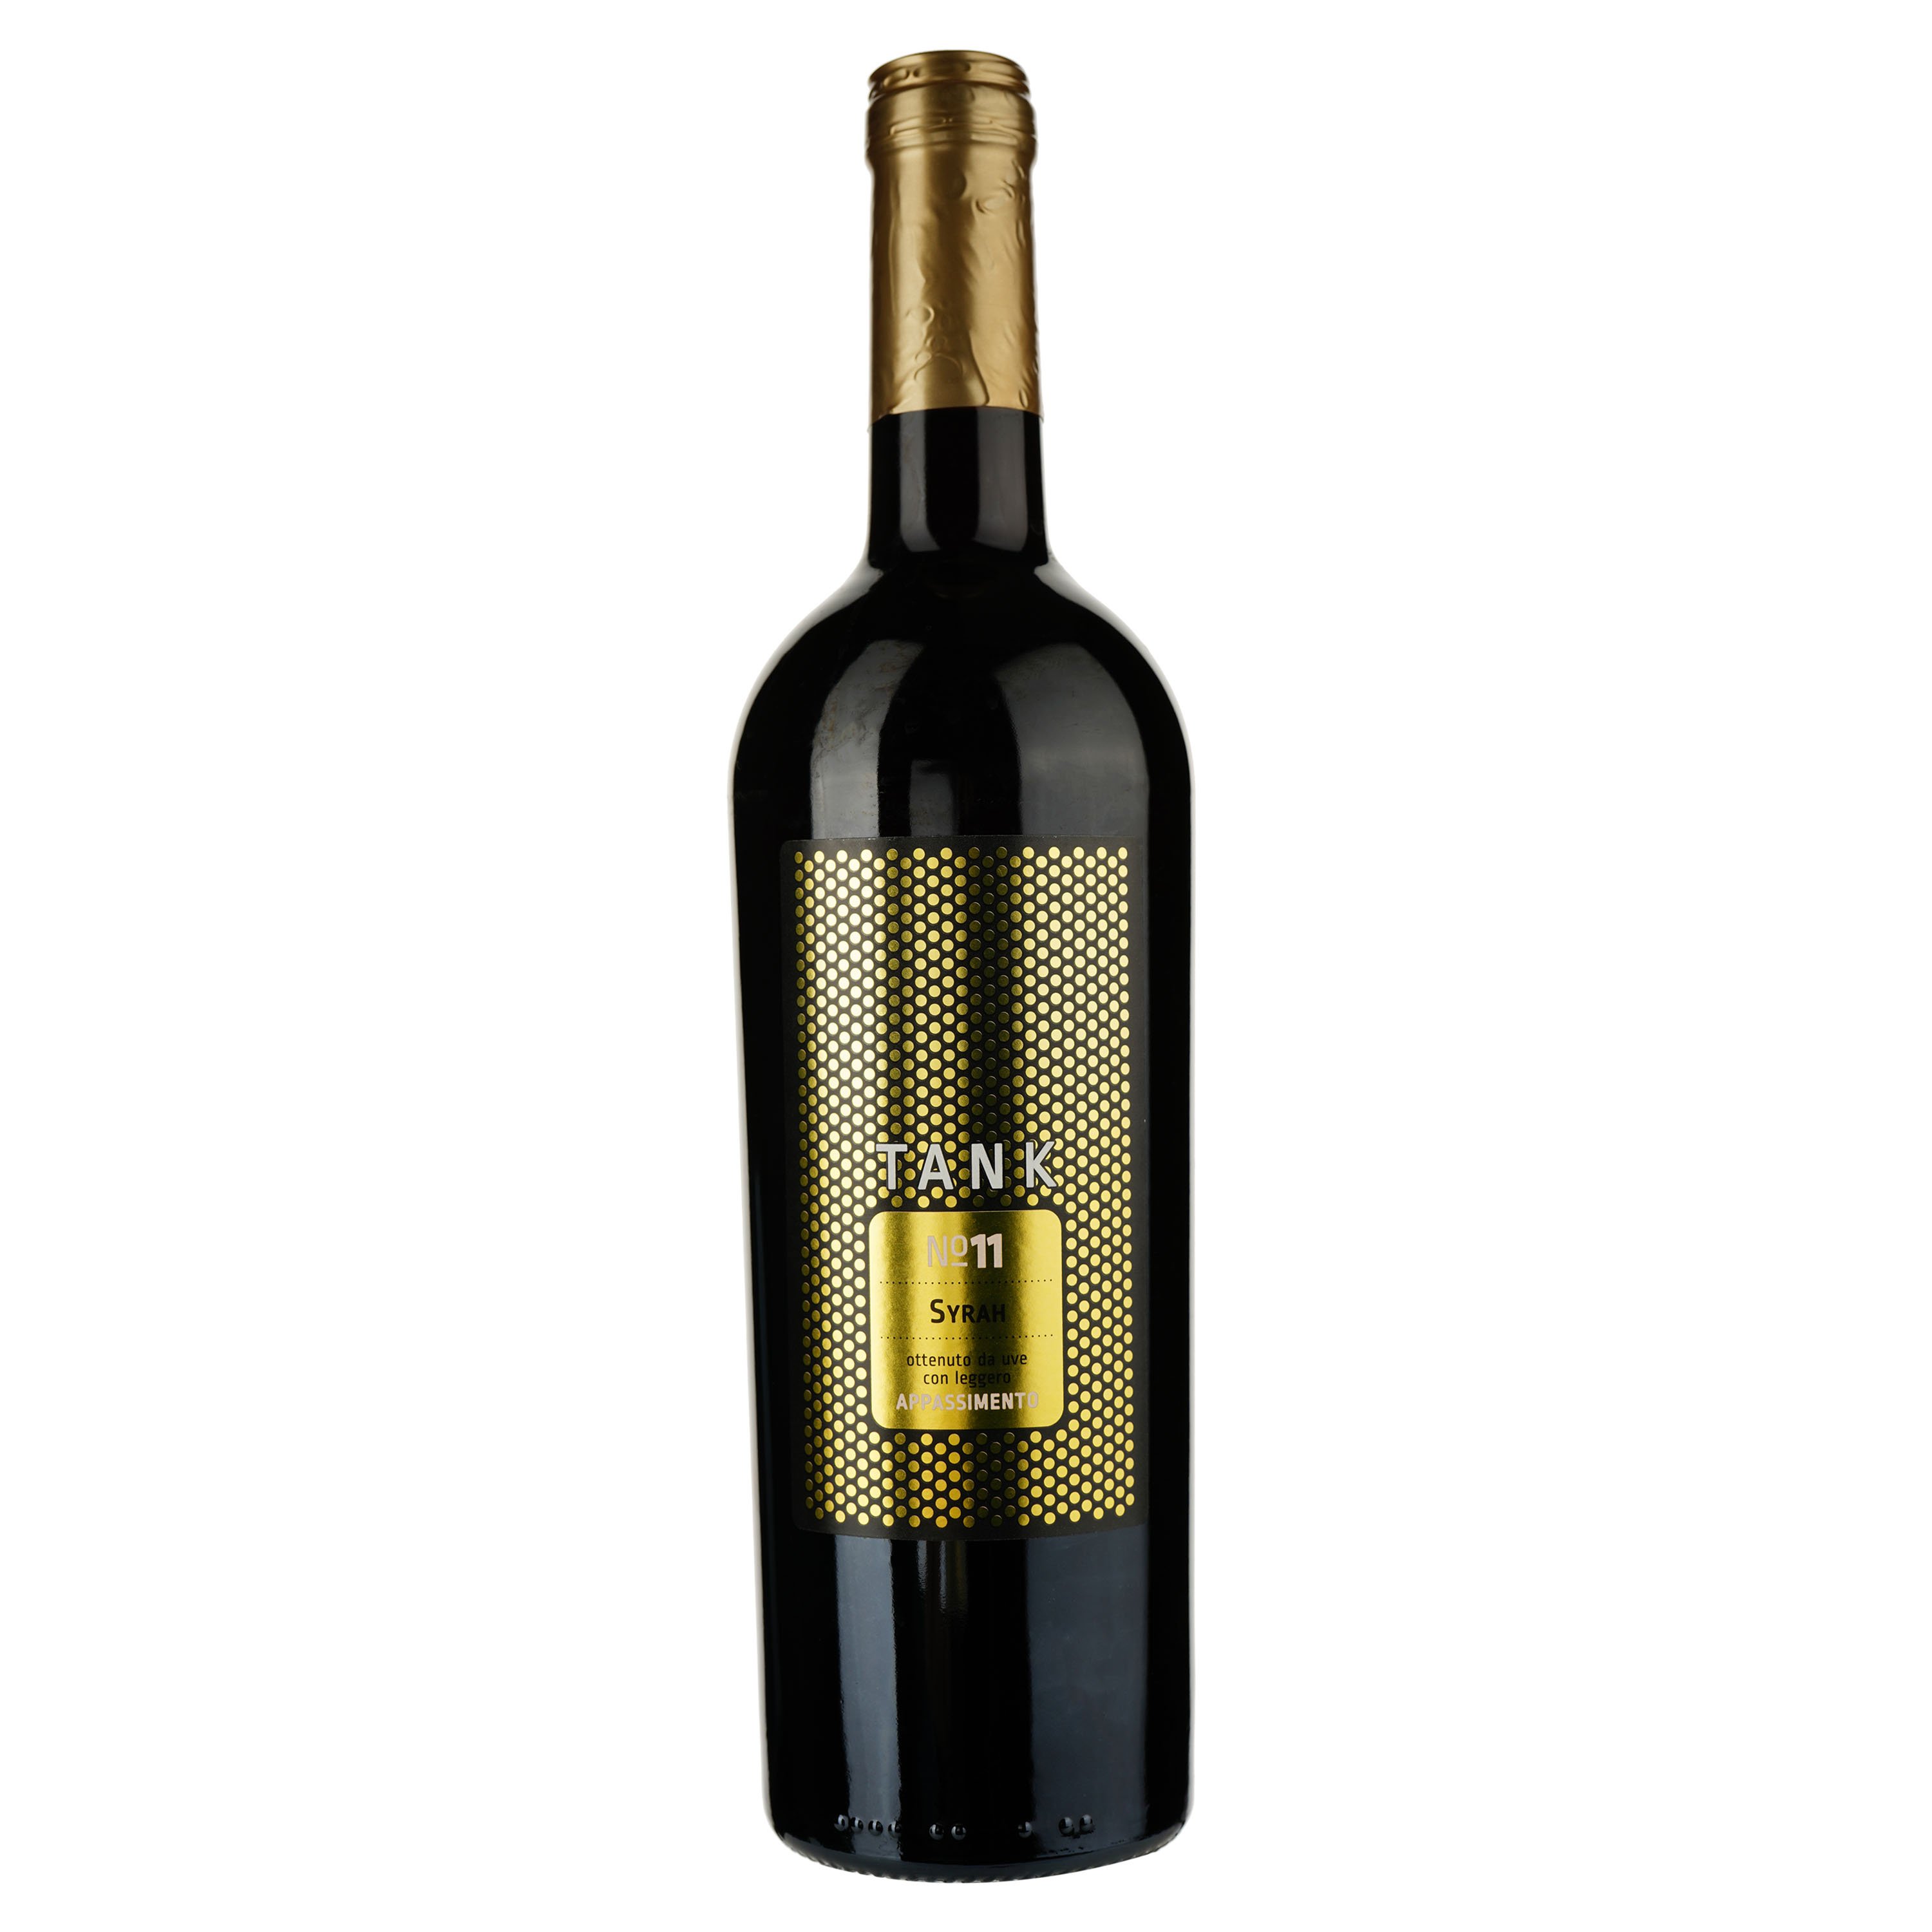 Вино Tank 11 Syrah Appassimento Terre Siciliane IGT, красное, сухое, 0,75 л - фото 1